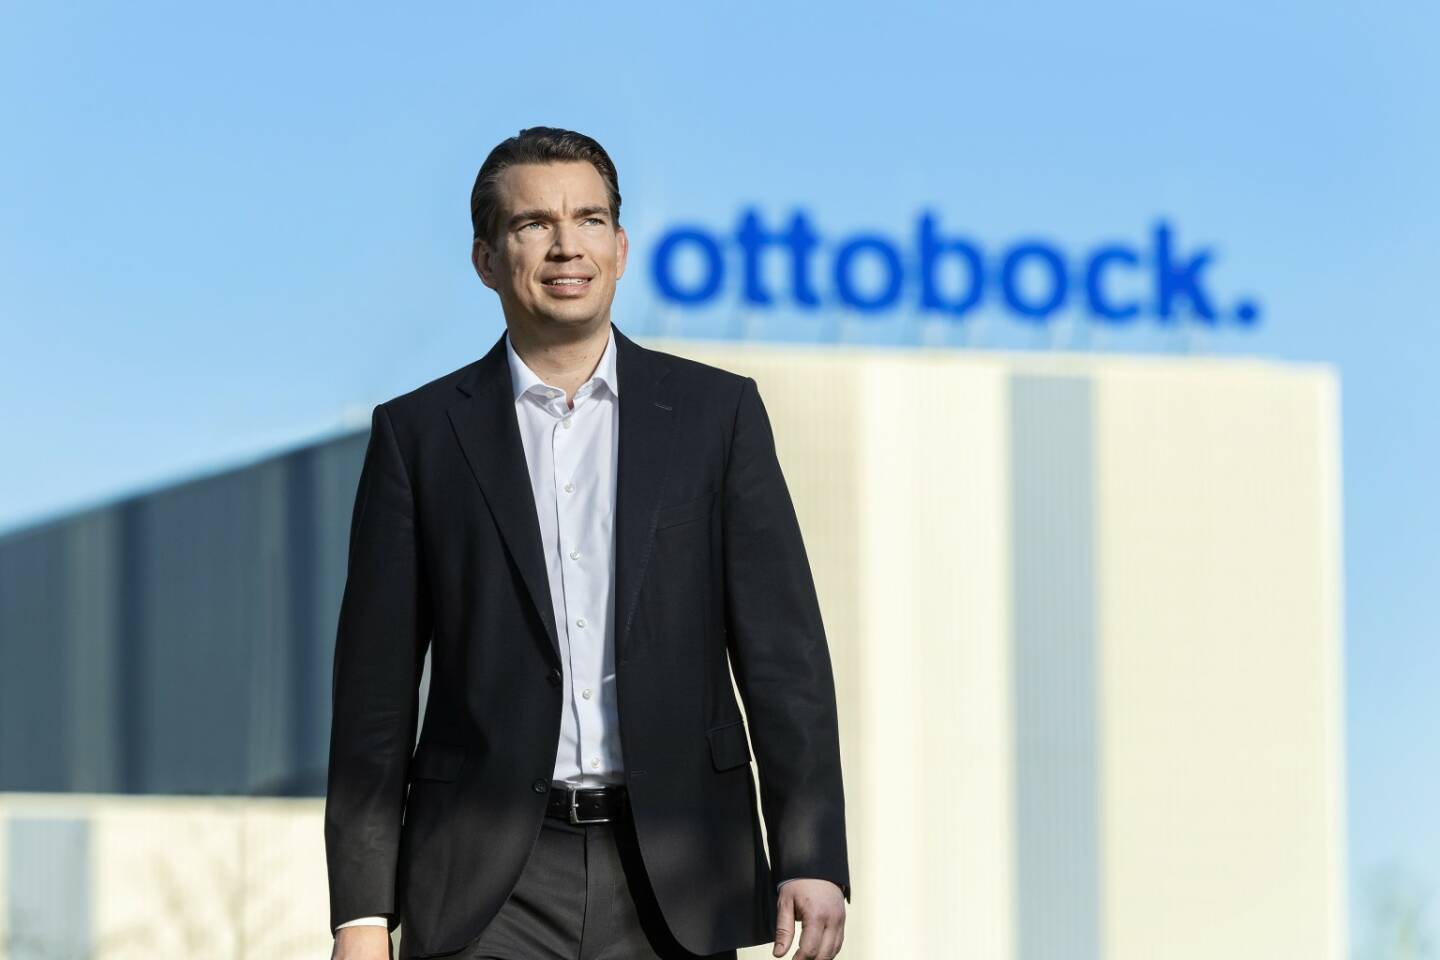 Ottobock CEO und CFO Philipp Schulte-Noelle, das das Unternehmen auf einen Börsegang vorbereitet, macht auf einen guten Start ins Jahr 2019 aufmerksam:  Wir sind voll auf Kurs in Richtung eine Milliarde Euro Umsatz und weiter steigenden Ergebnissen - und das dank neuer Produkte und steigender Effizienz. Fotocredit: Ottobock
